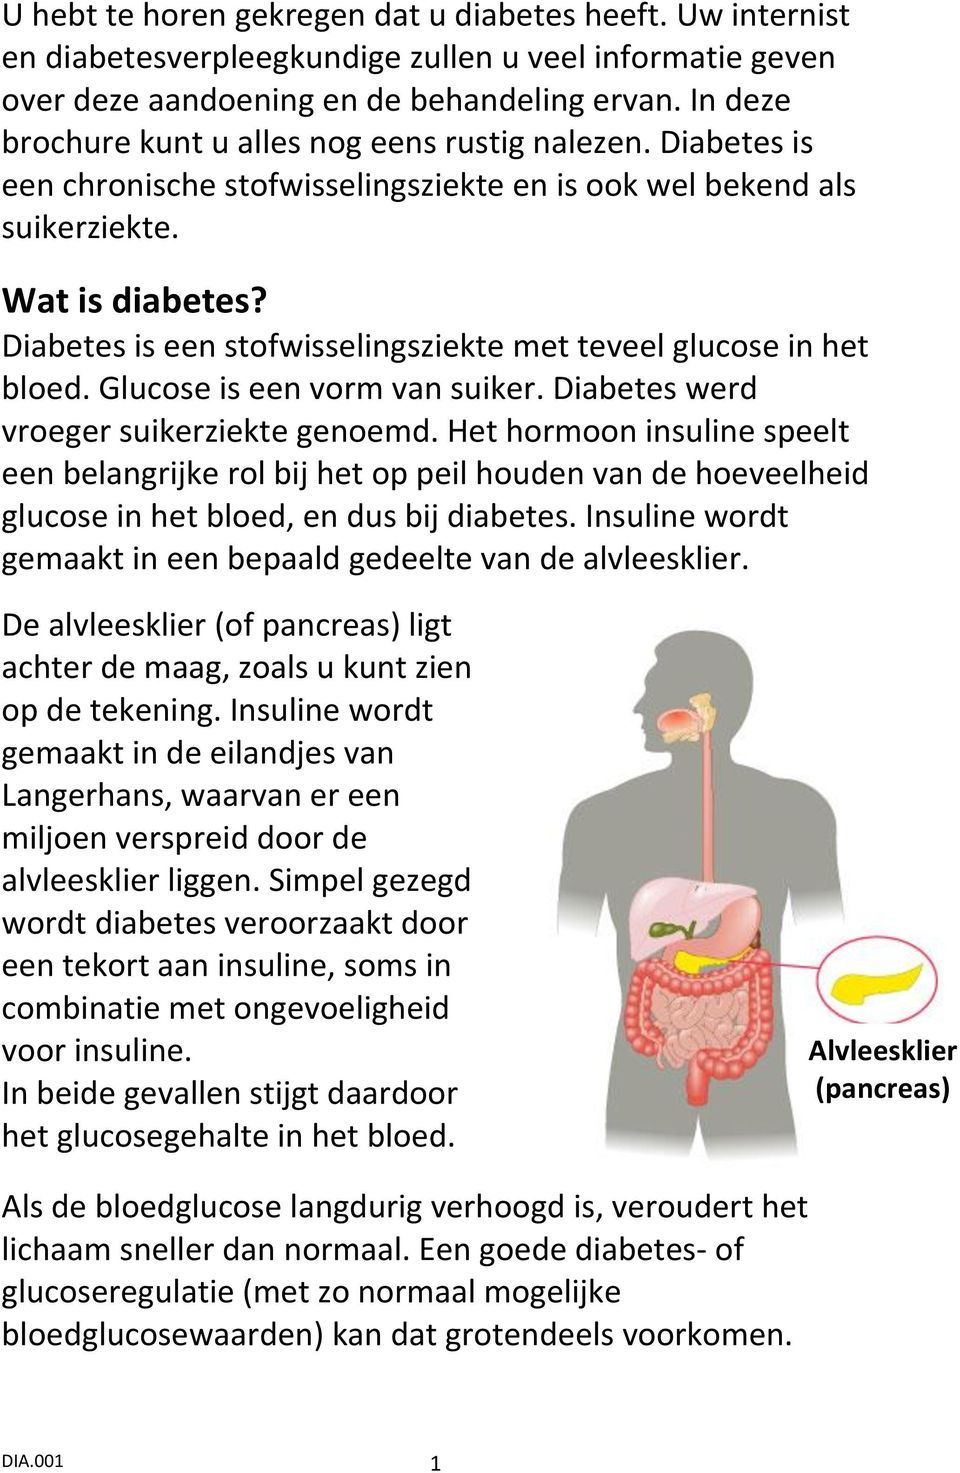 Diabetes is een stofwisselingsziekte met teveel glucose in het bloed. Glucose is een vorm van suiker. Diabetes werd vroeger suikerziekte genoemd.